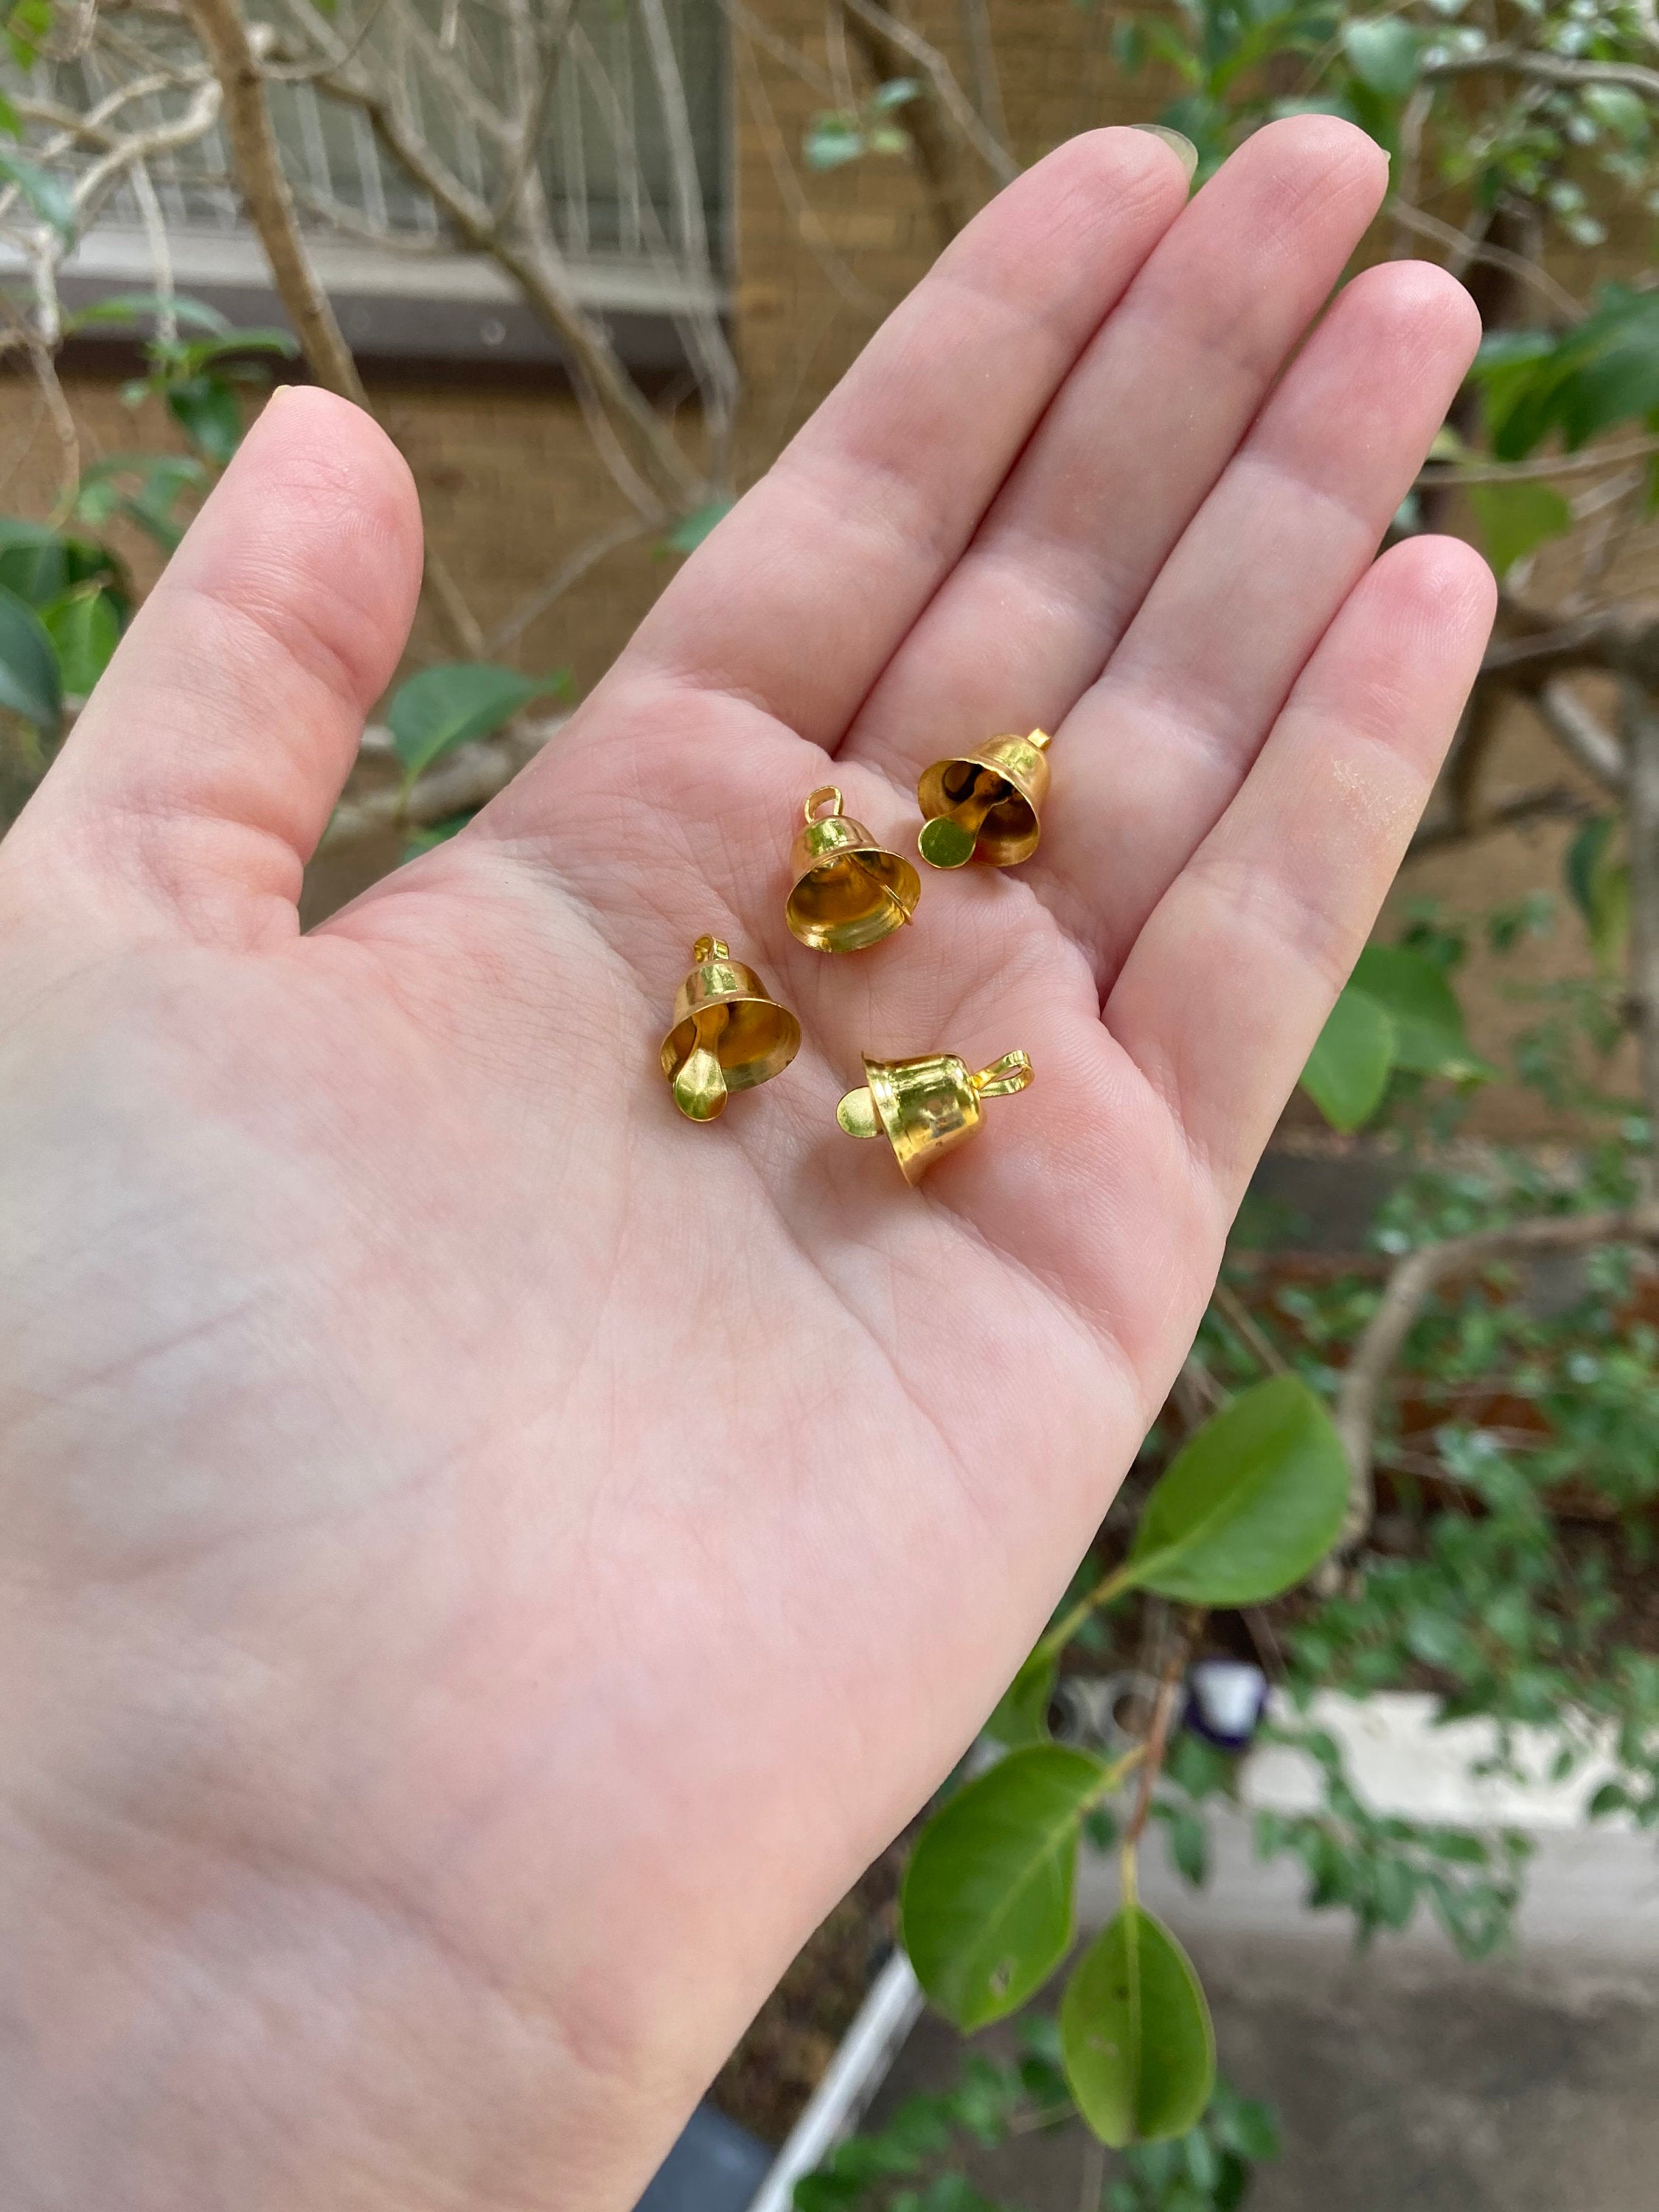 Miniature Golden Bells